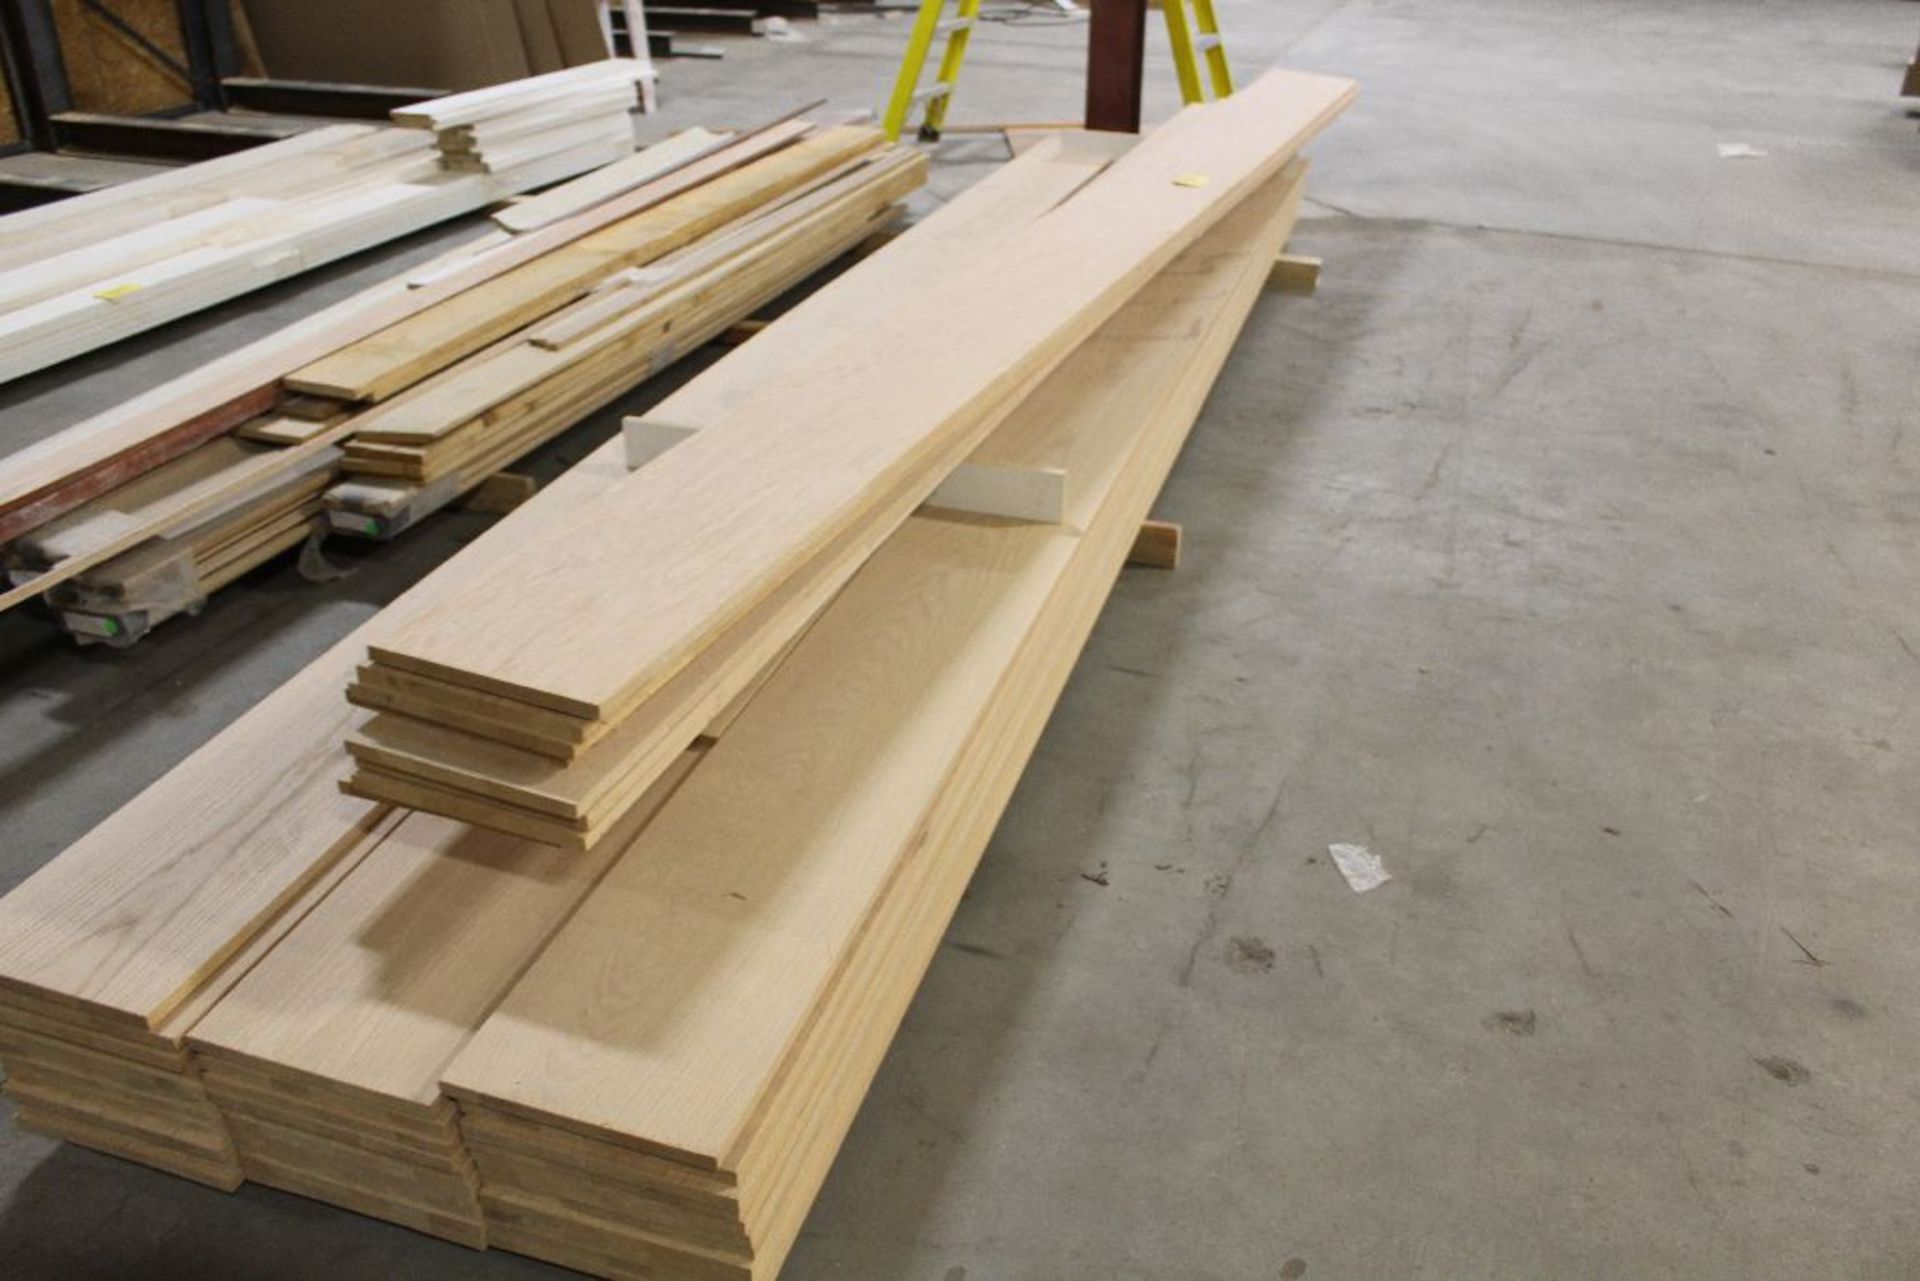 Lumber oak plank, 3/4" x 12" x 16'.